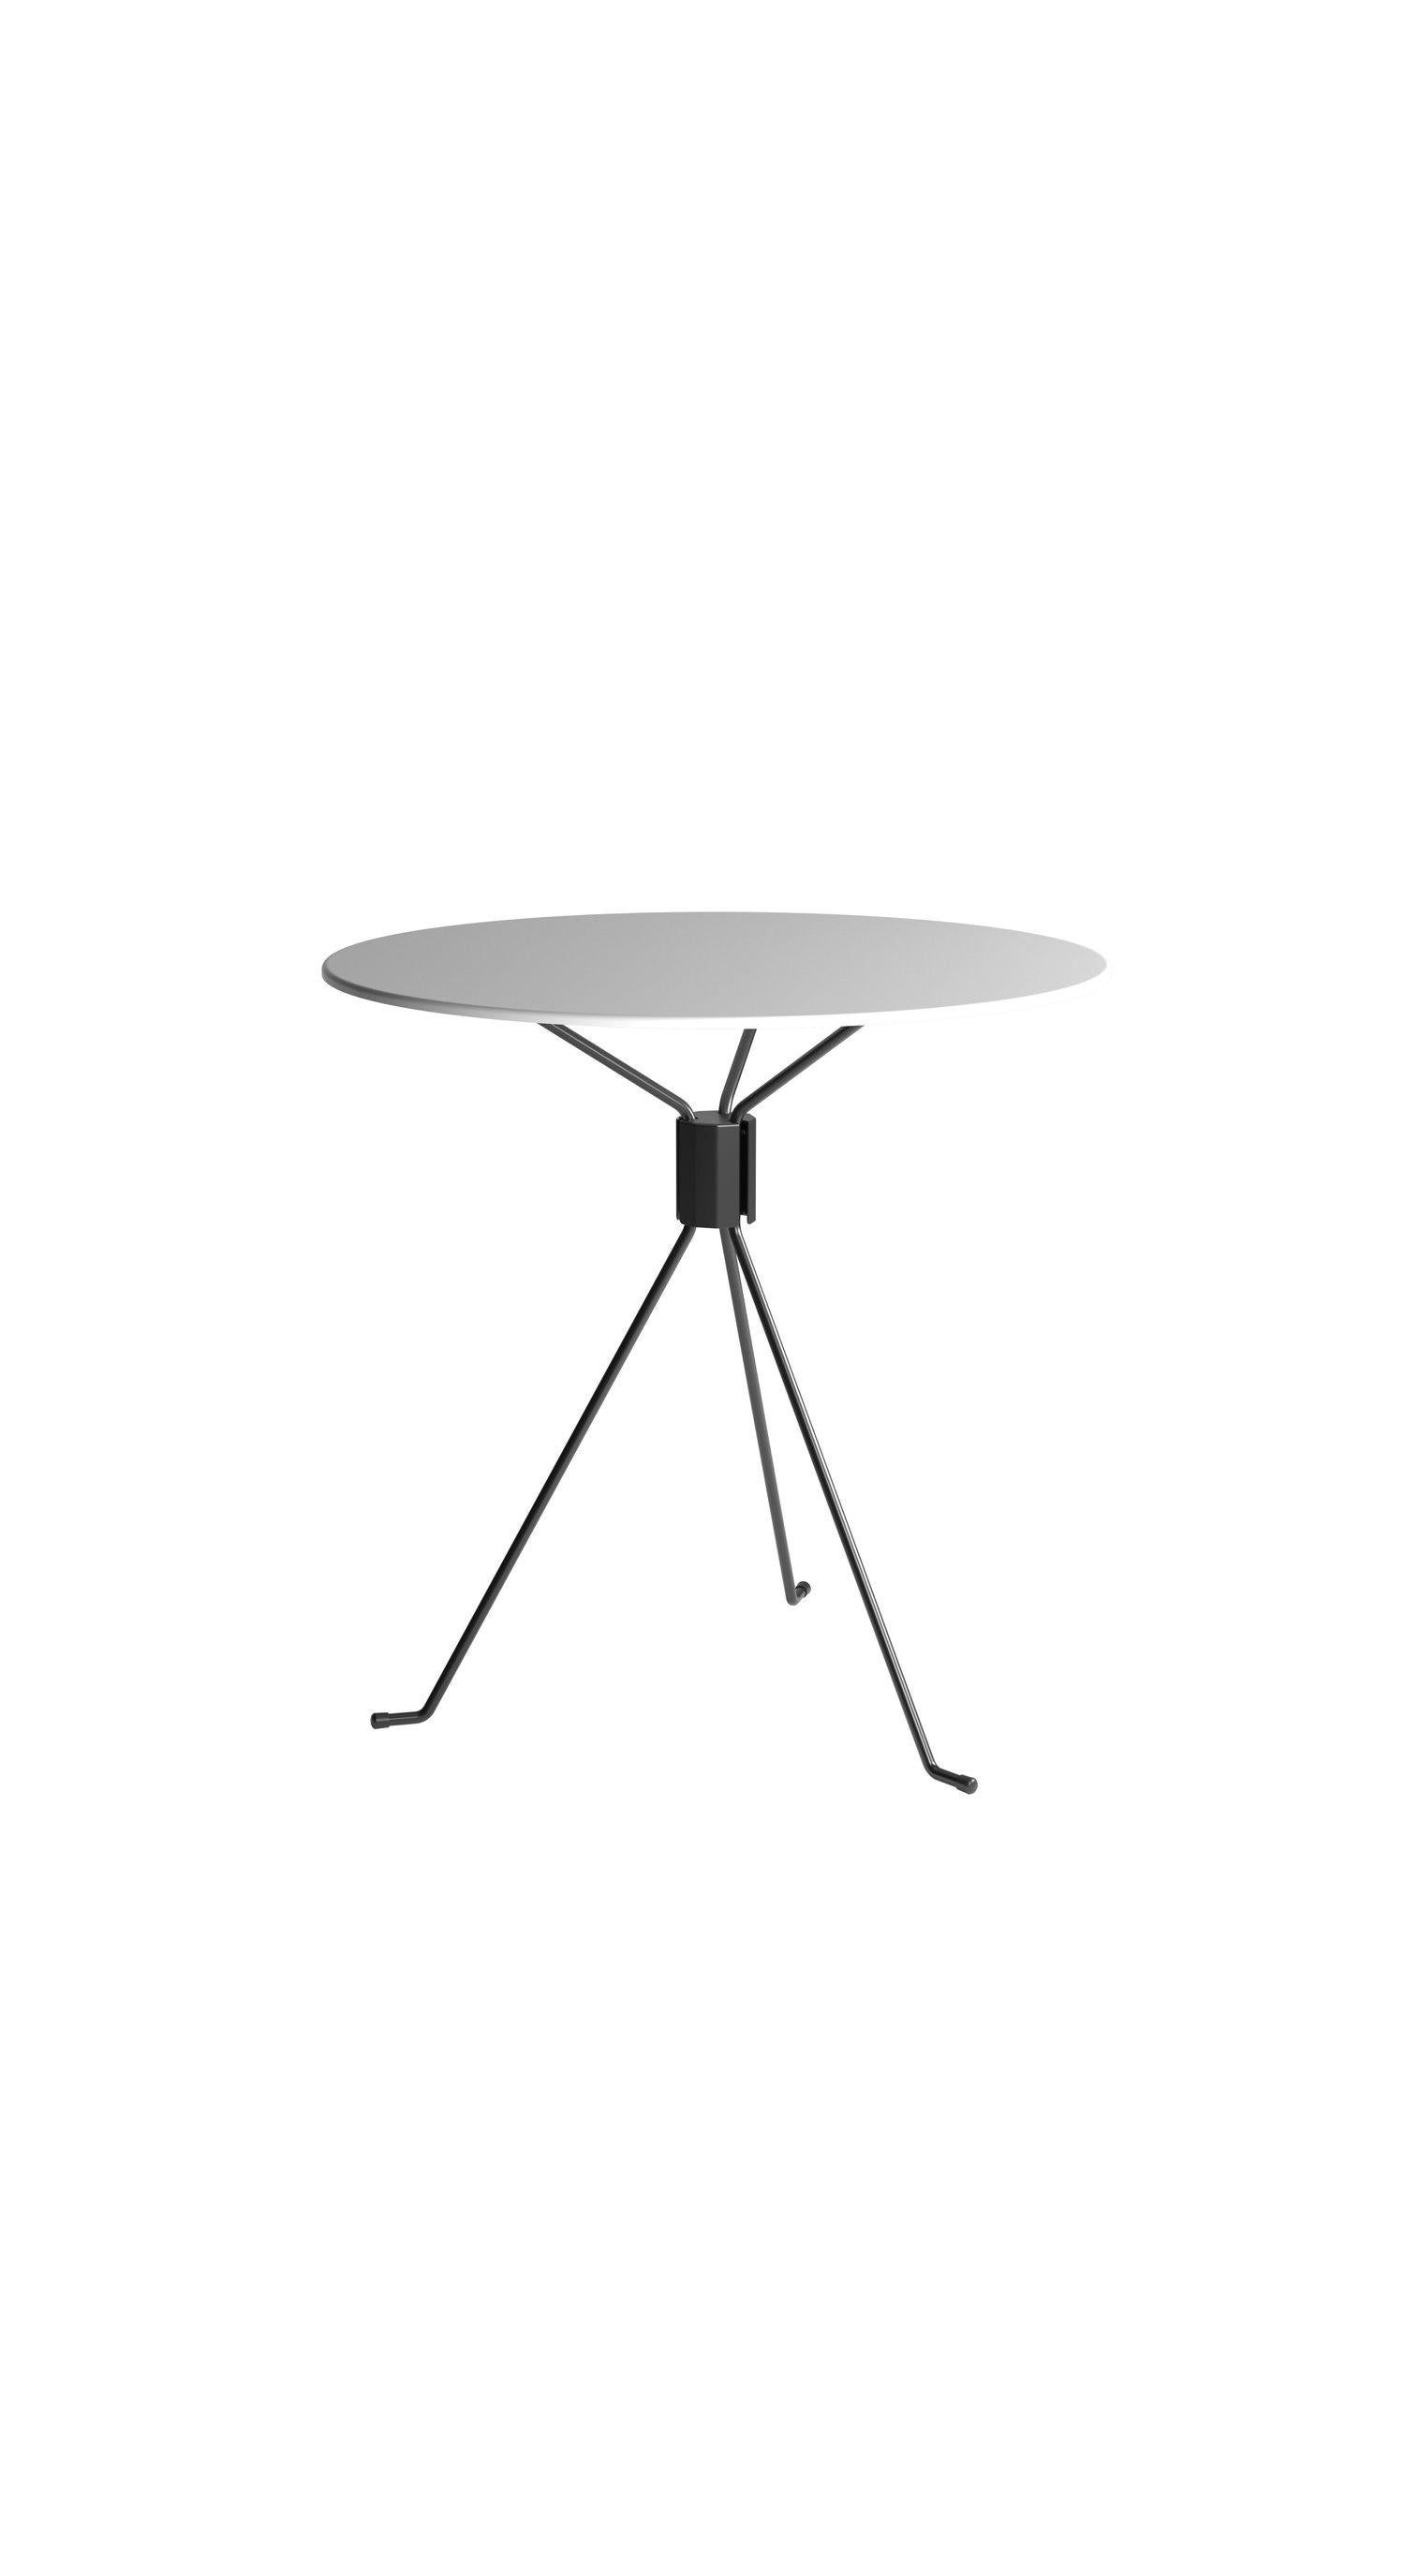 Kleiner weißer Capri-Bond-Tisch von Cools Collection'S
MATERIALIEN: Stahl, Farbe.
Abmessungen: Ø 75 x H 74 cm.
Erhältlich mit schwarzer oder weißer Tischplatte.

COOLS Collection wurde 2020 von dem Mutter-Tochter-Duo Stefania Andorlini und Maria